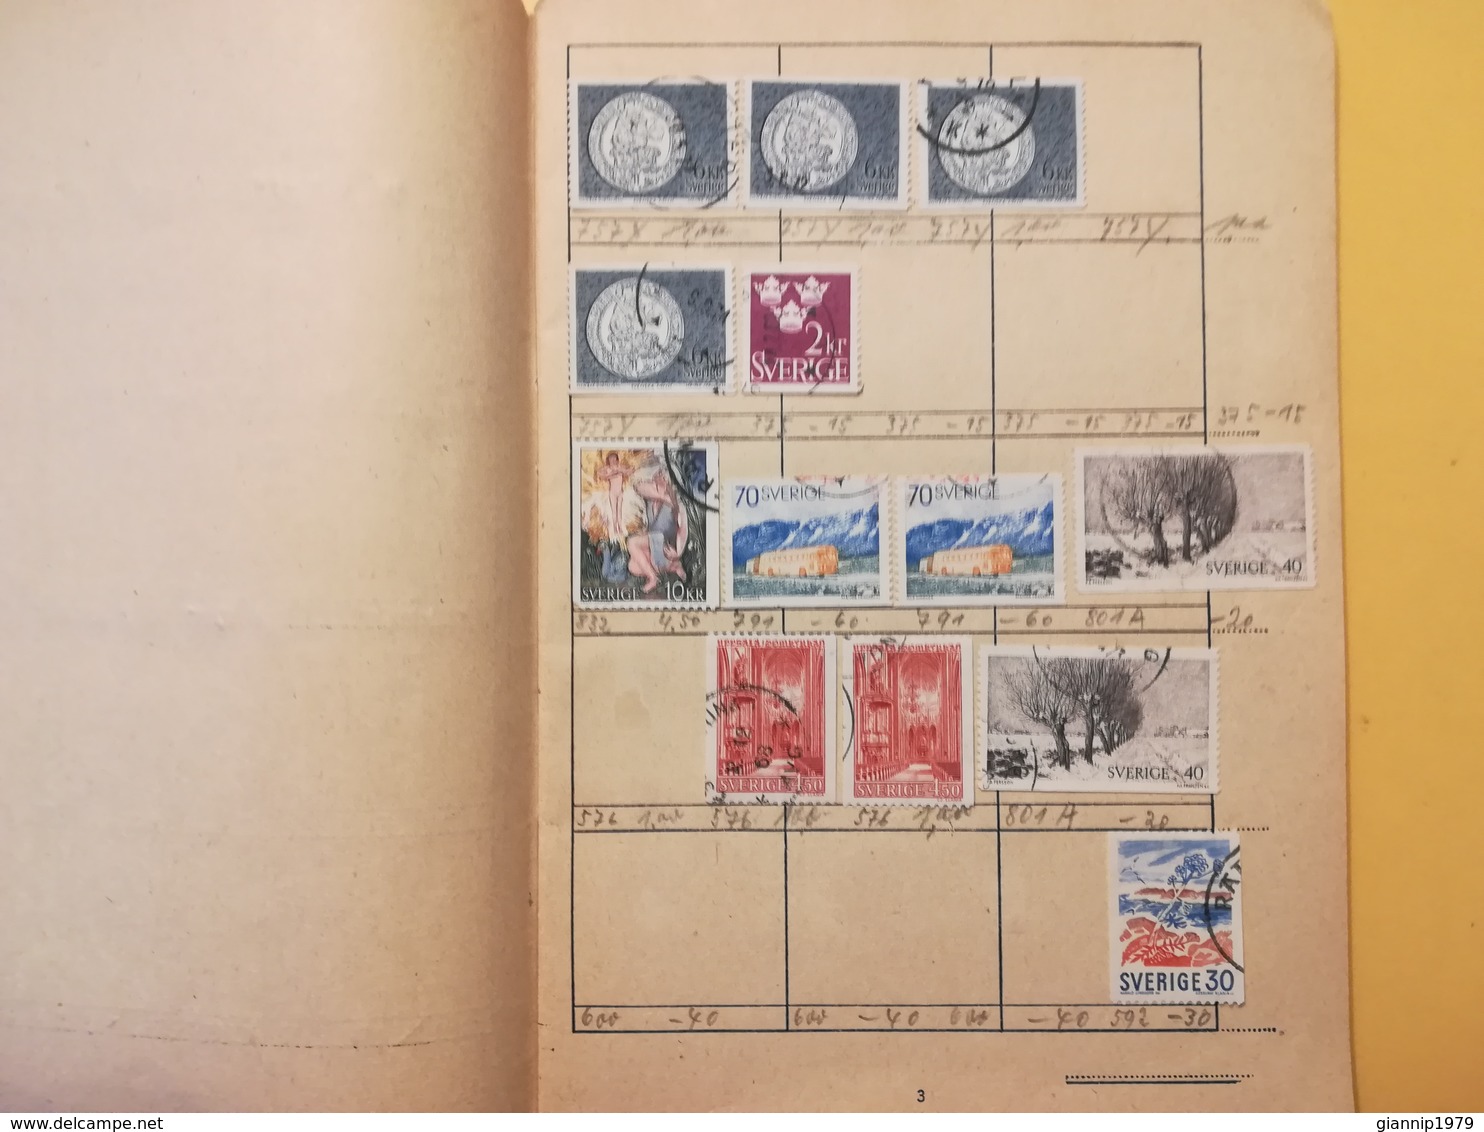 LIBRETTO FRANCOBOLLI STAMPS AUSWAHLHEFT OPUSCOLO BOOK LOTTO COLLEZIONI SVEZIA SVERIGE DAL 1964 OLTRE 120 PEZZI - Collections